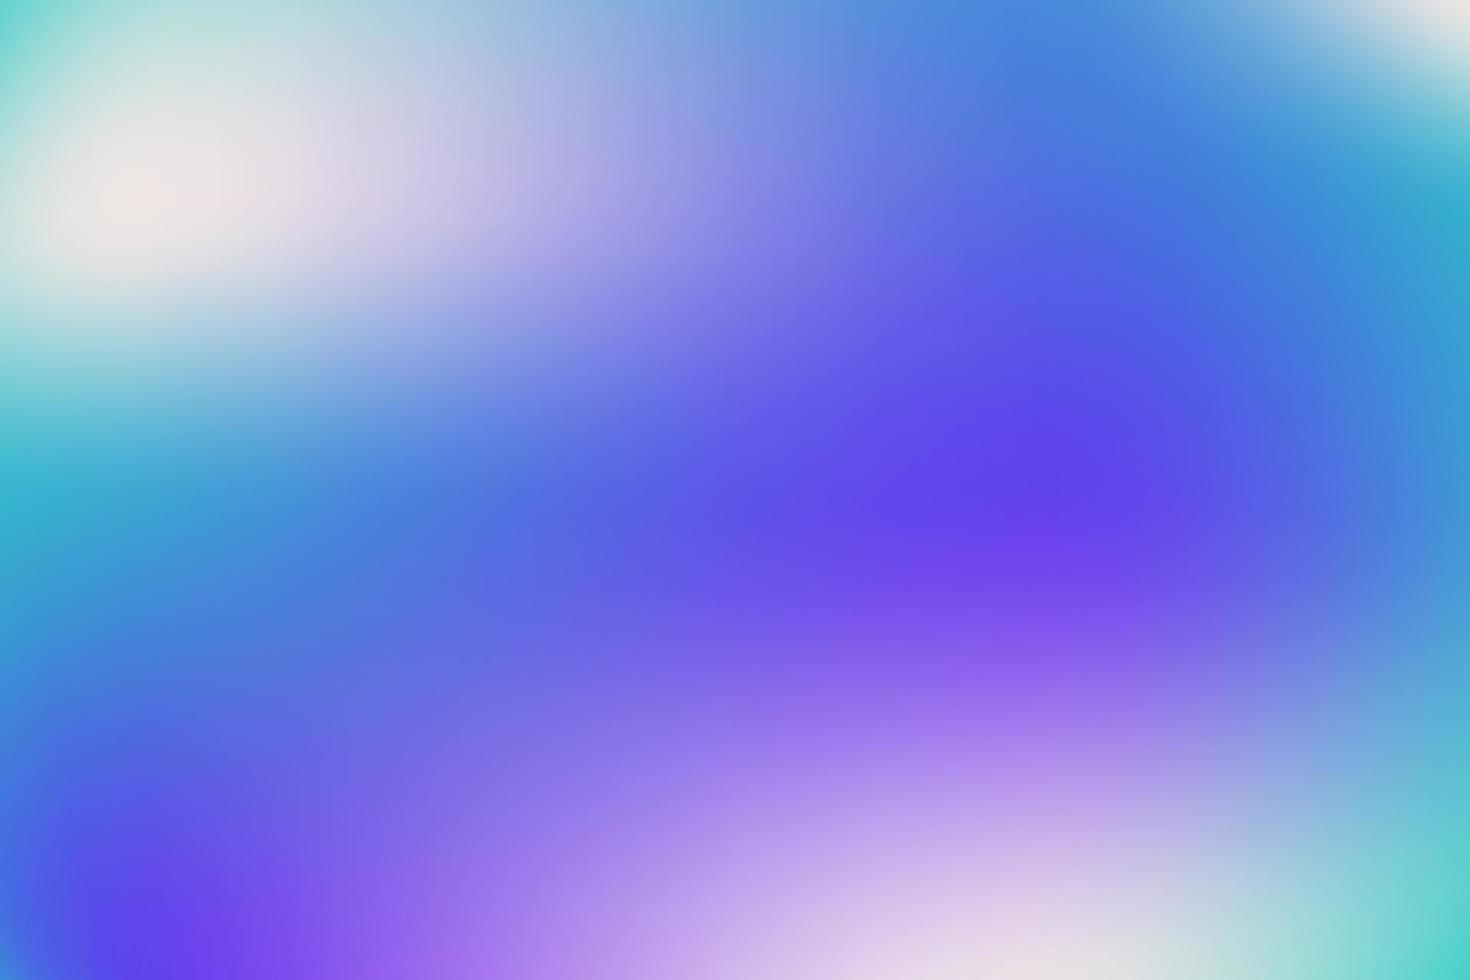 Blurred gradient background, blue, rainbow, rainbow background, background soft. vector